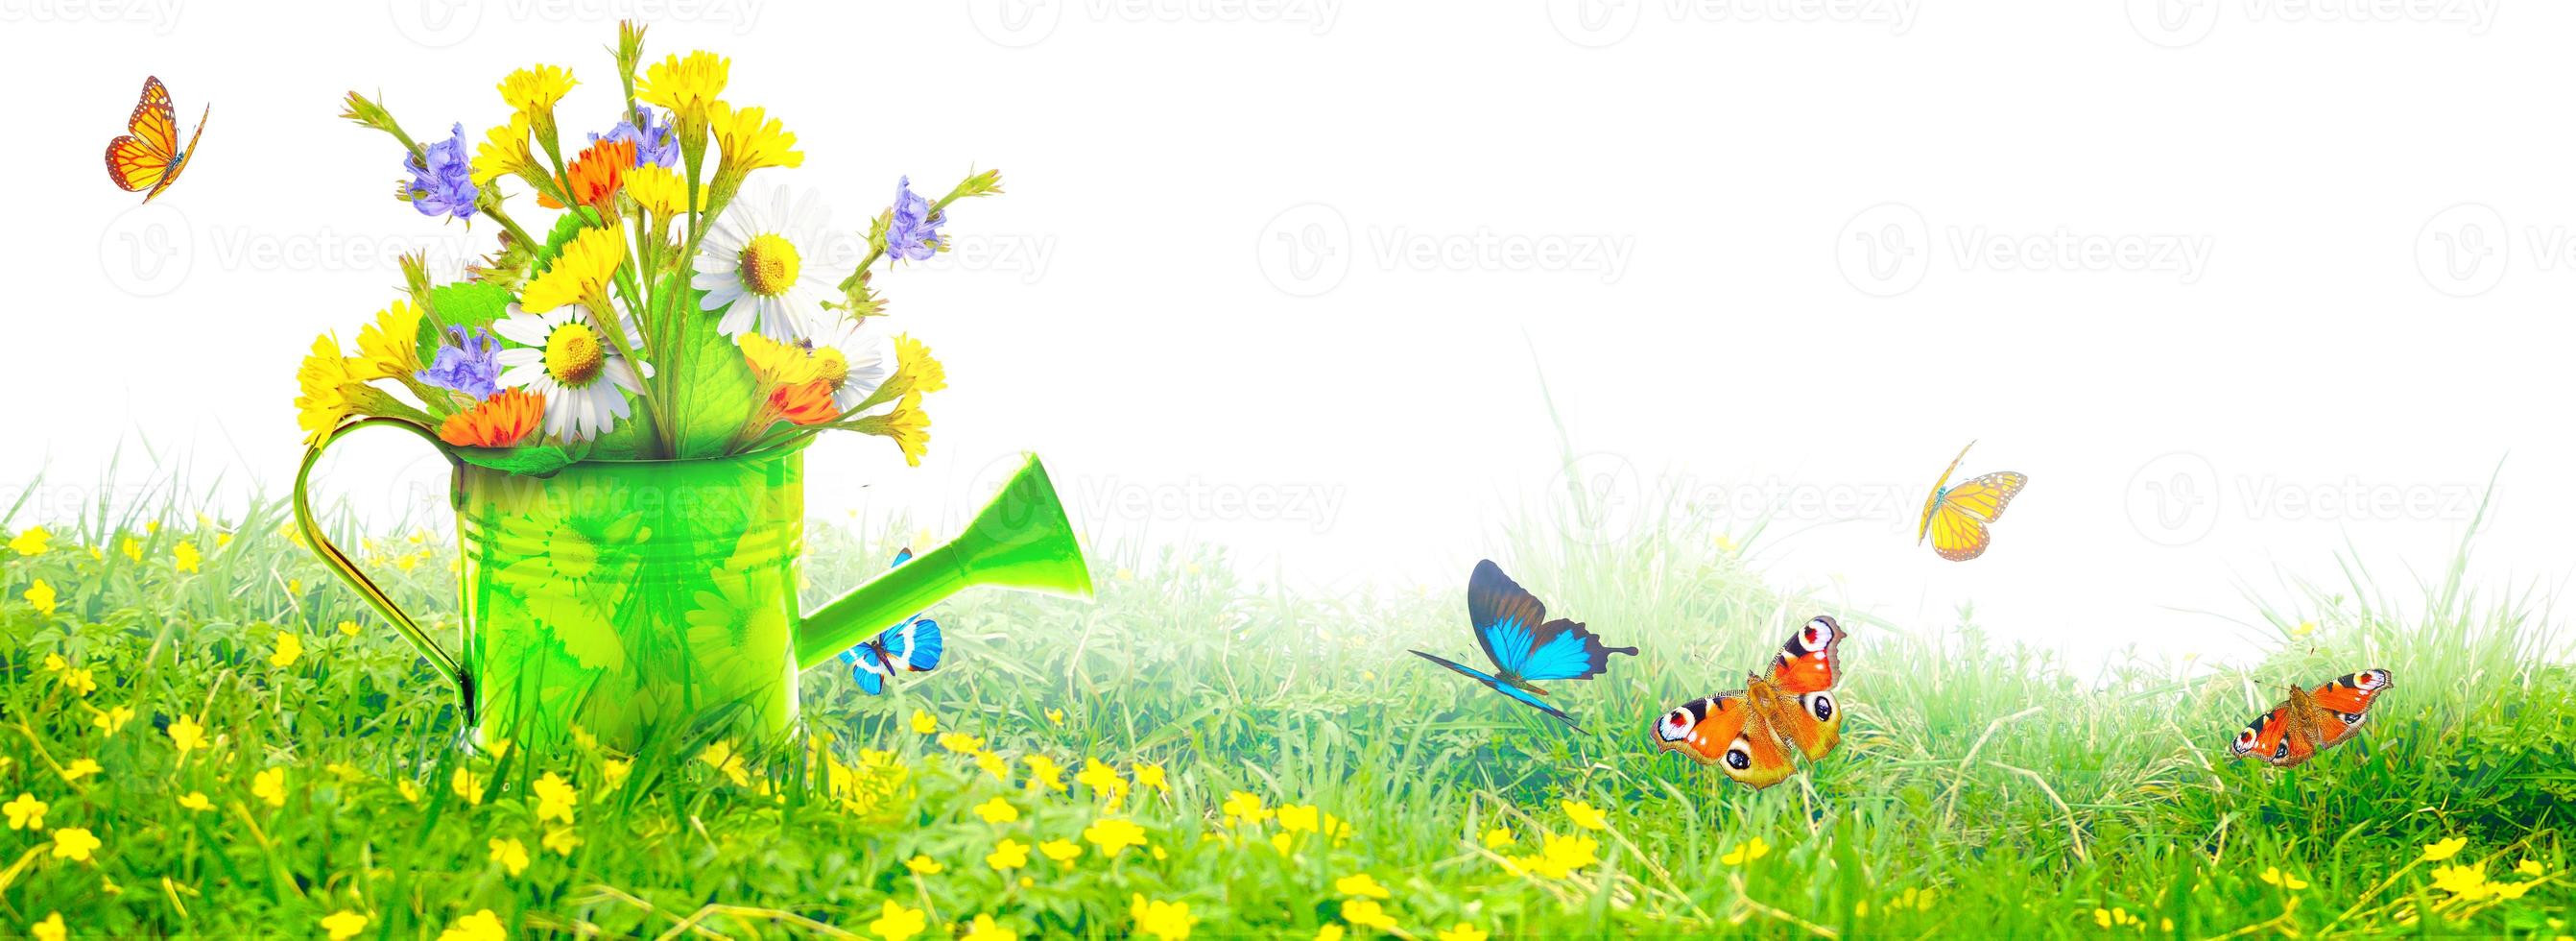 buquê de flores silvestres coloridas em um regador com borboletas. foto